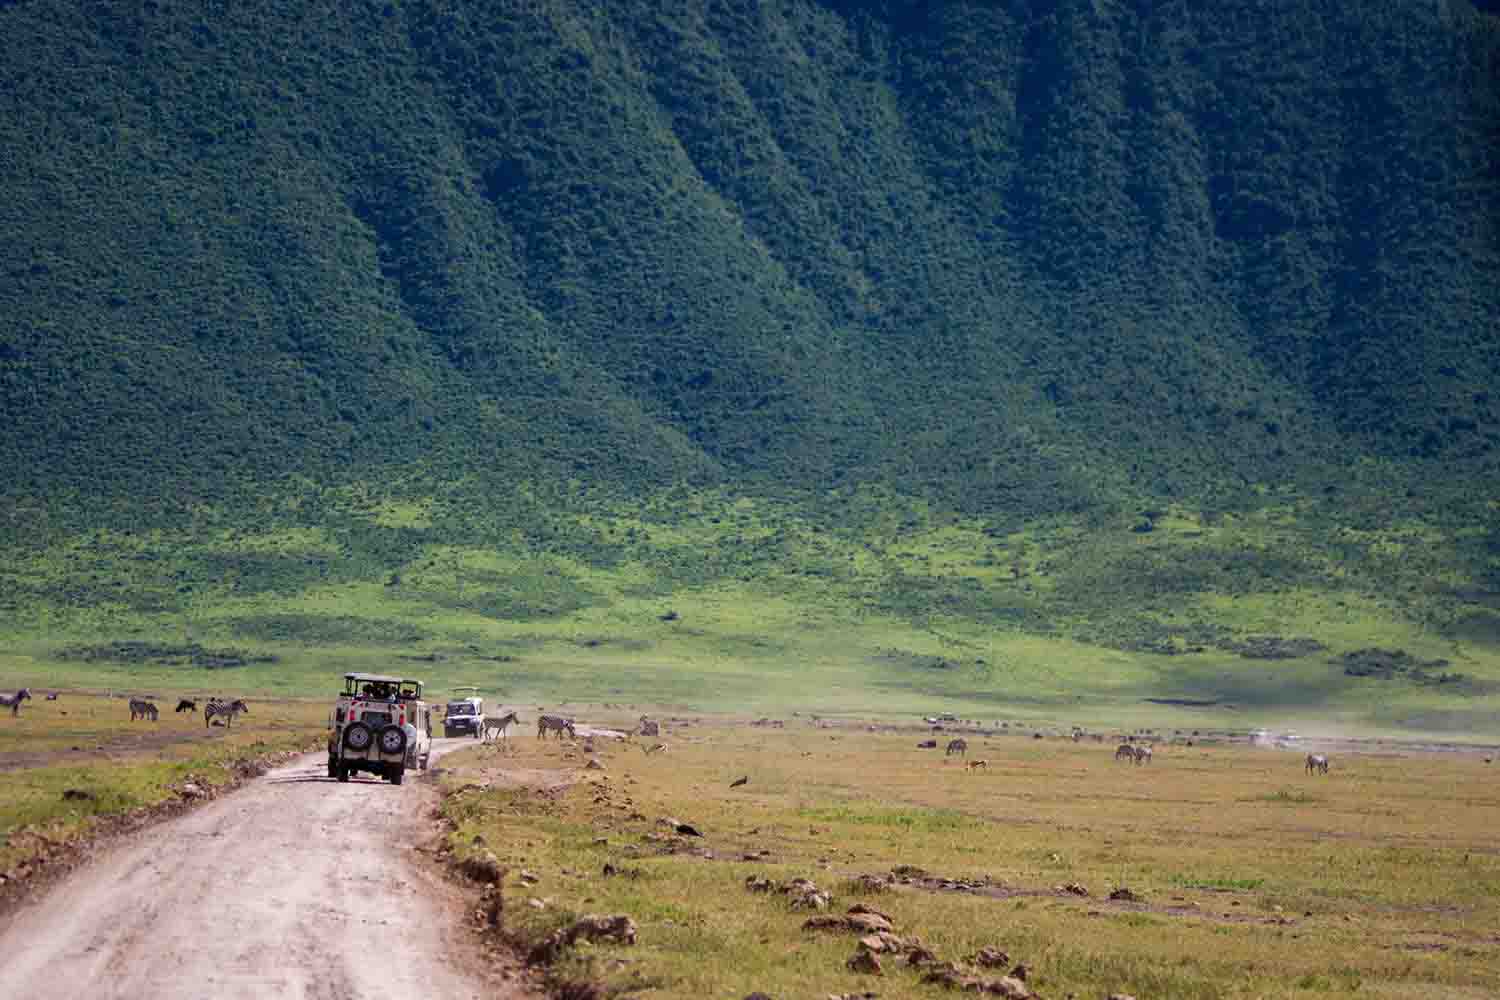 Landscapes of the Ngorongoro crater, Ngorongoro national park